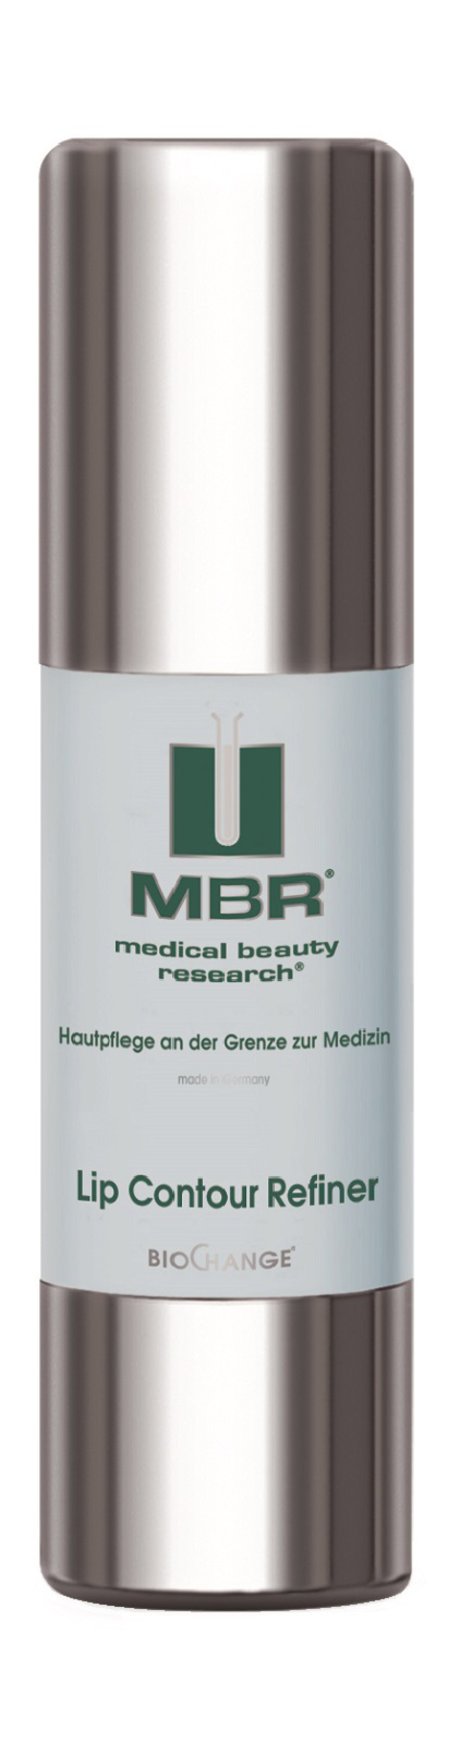 MBR Biochange Lip Contour Refiner